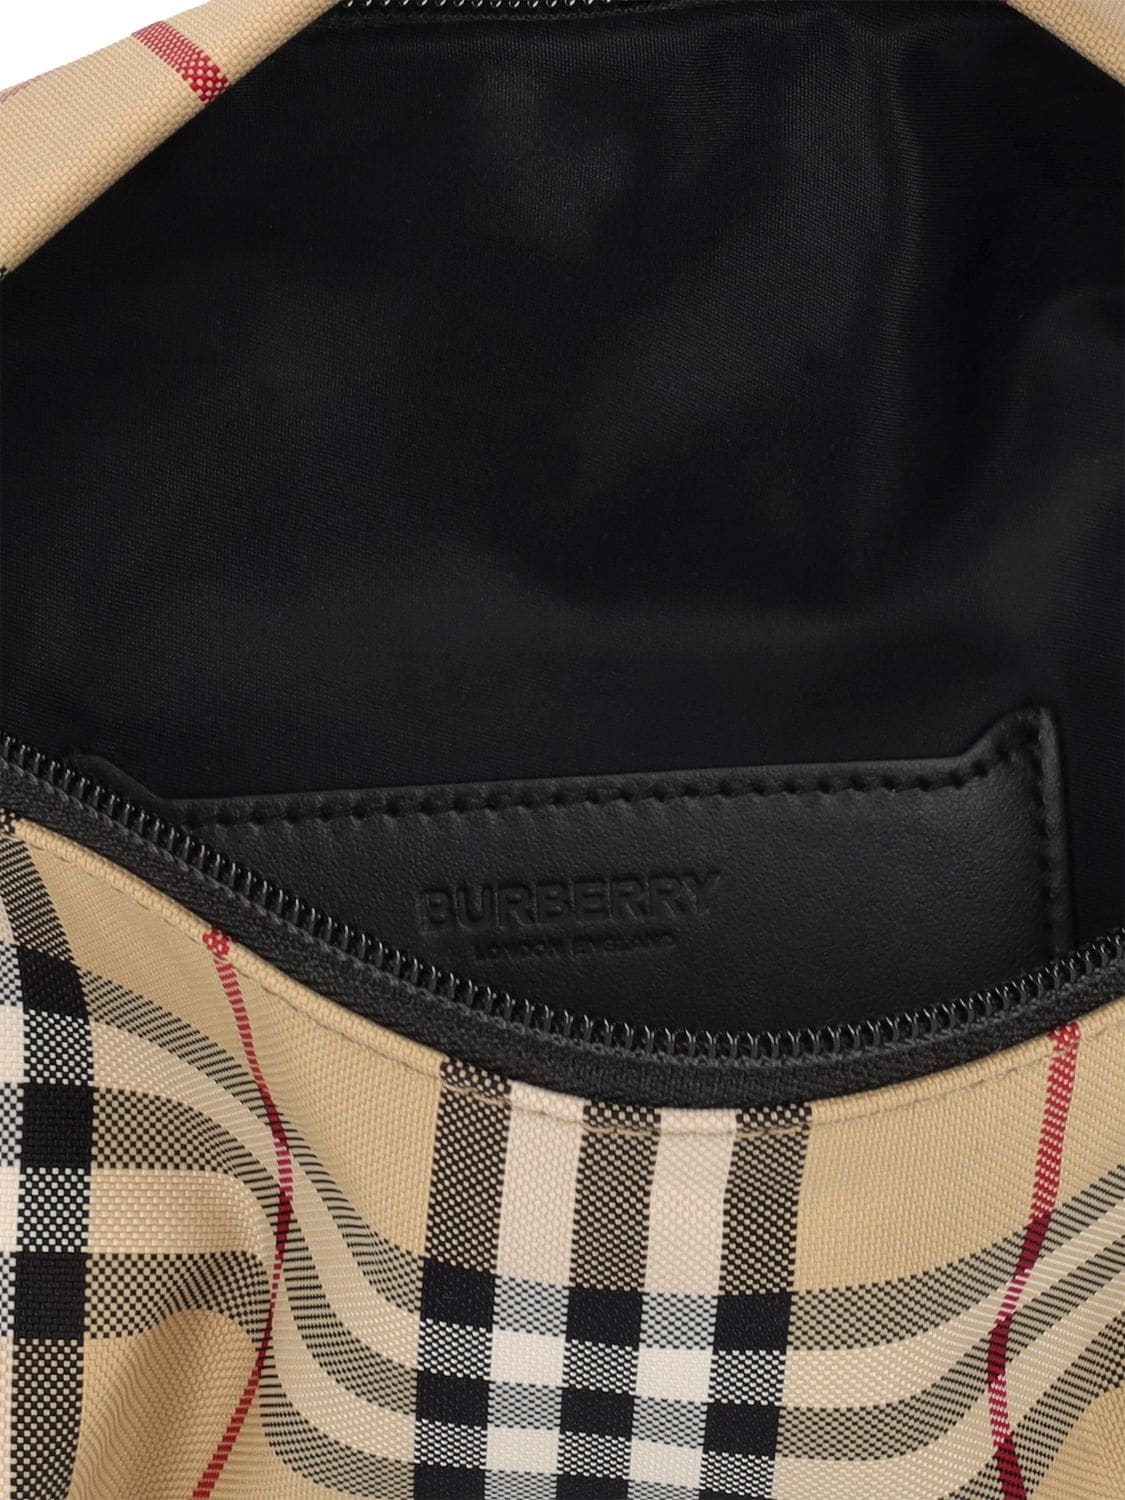 Burberry Stevie Check Belt Bag